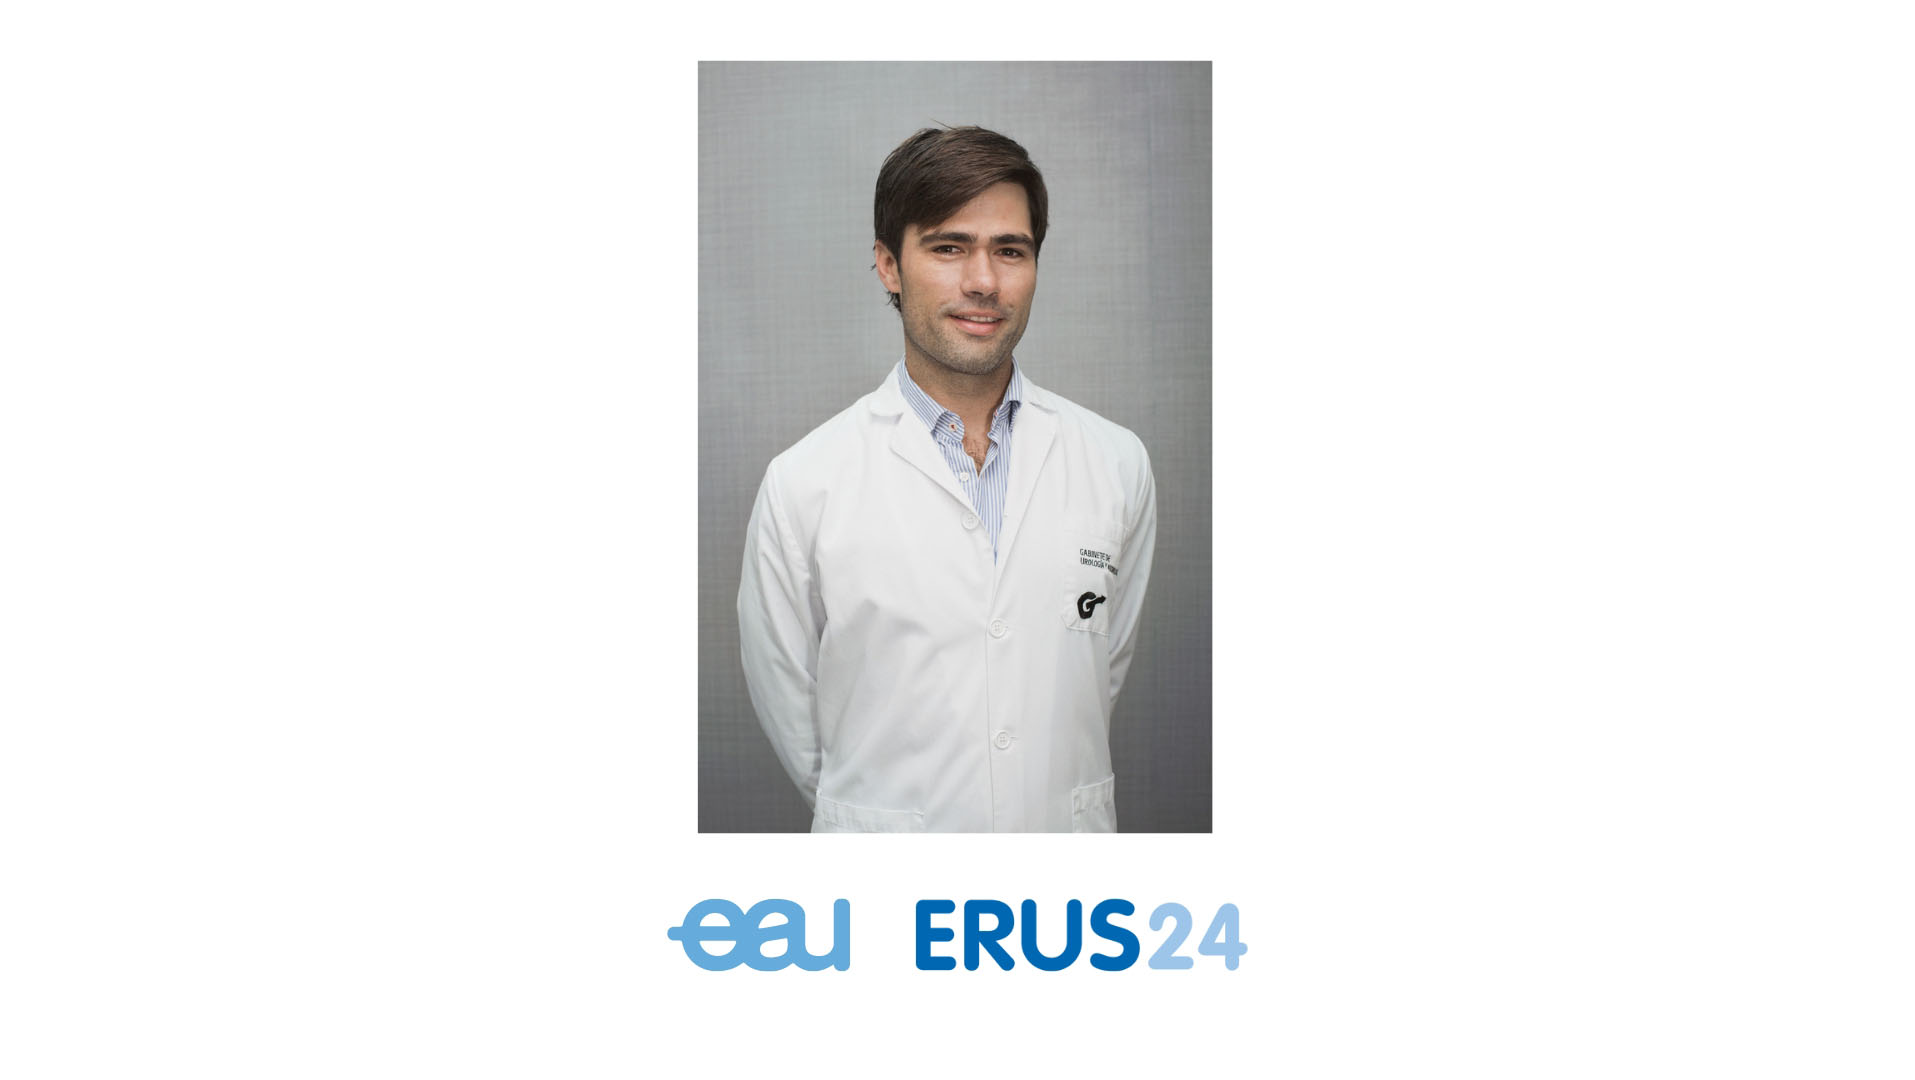 El Dr. Pablo Juárez del Dago, director de nuestro centro, nombrado Responsable de Tecnología del ERUS de la Asociación Europea de Urología